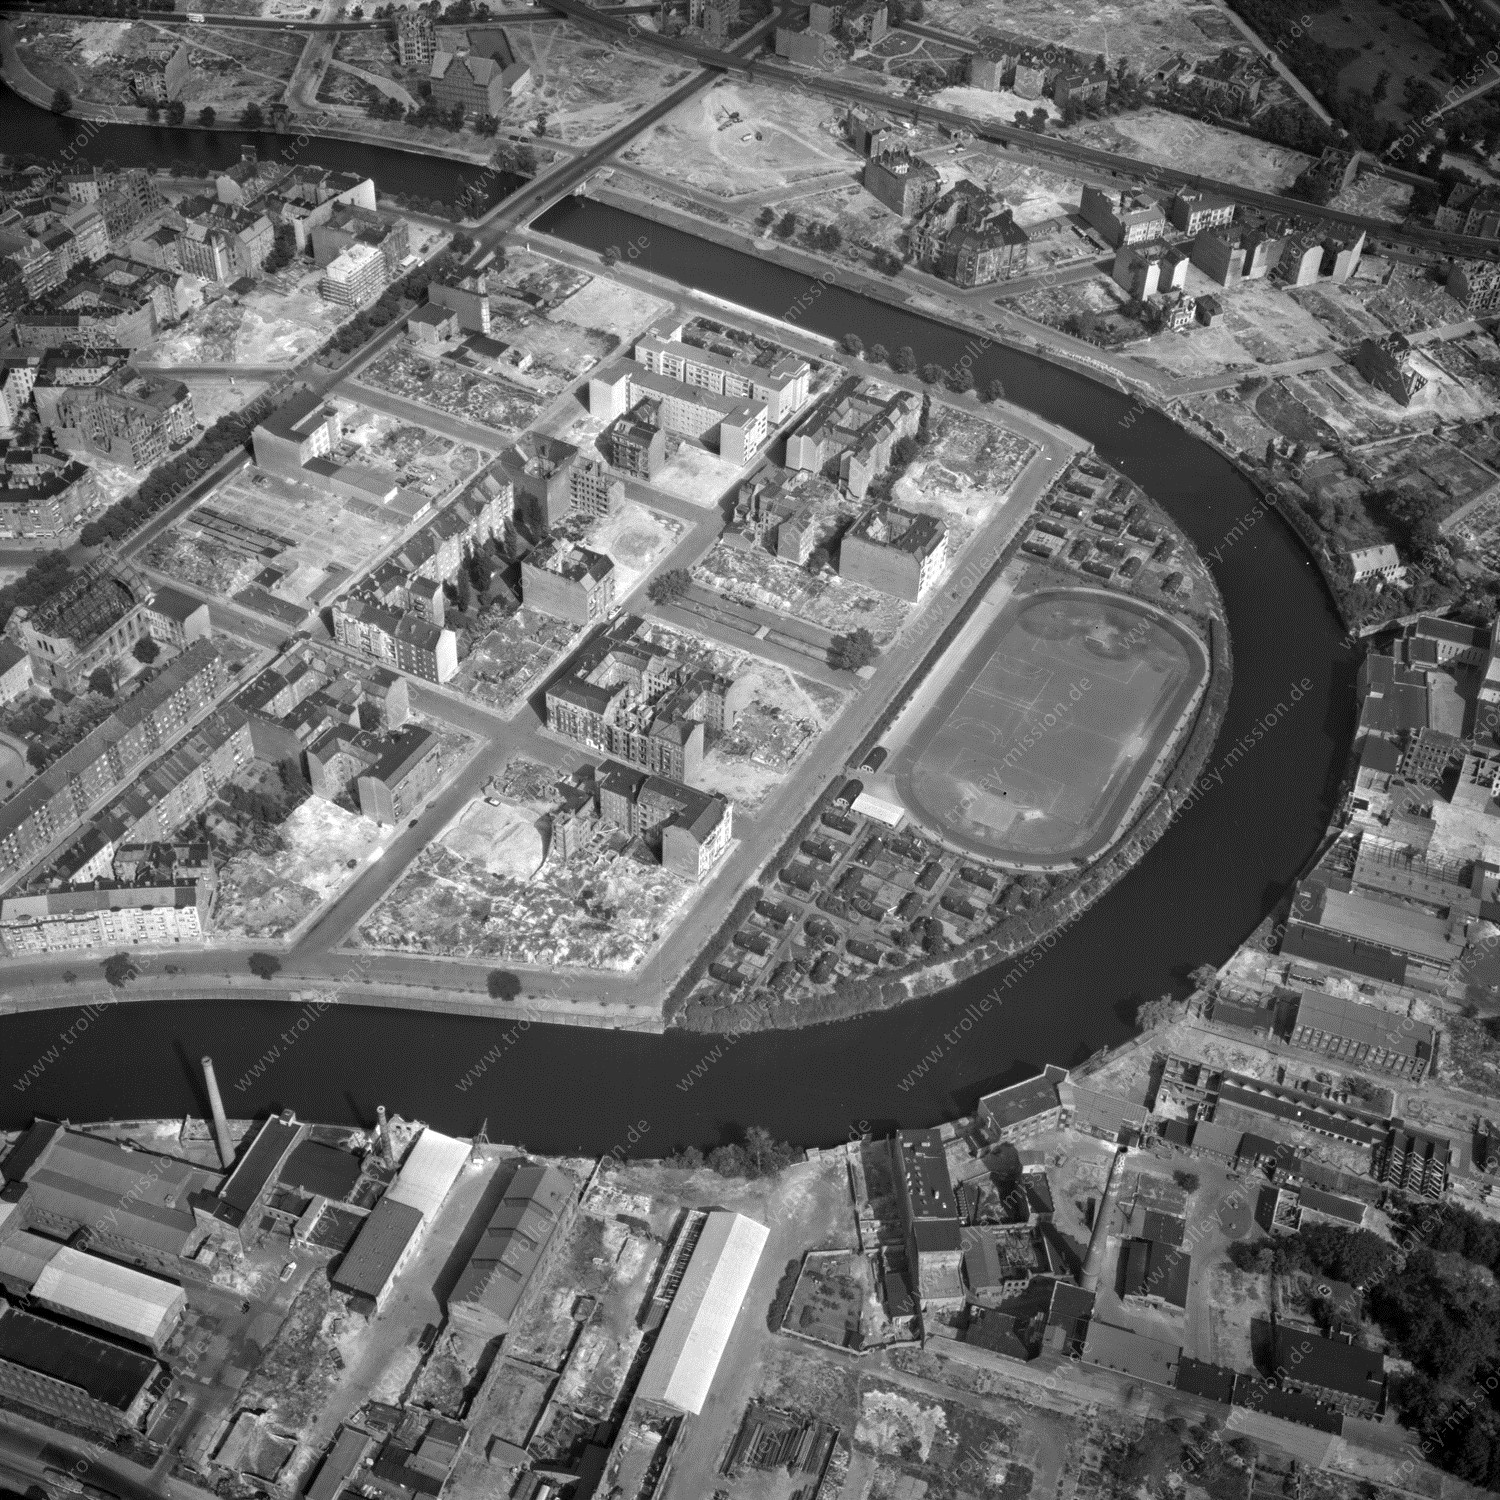 Alte Fotos und Luftbilder von Berlin - Luftbildaufnahme Nr. 06 - Historische Luftaufnahmen von West-Berlin aus dem Jahr 1954 - Flugstrecke Uniform